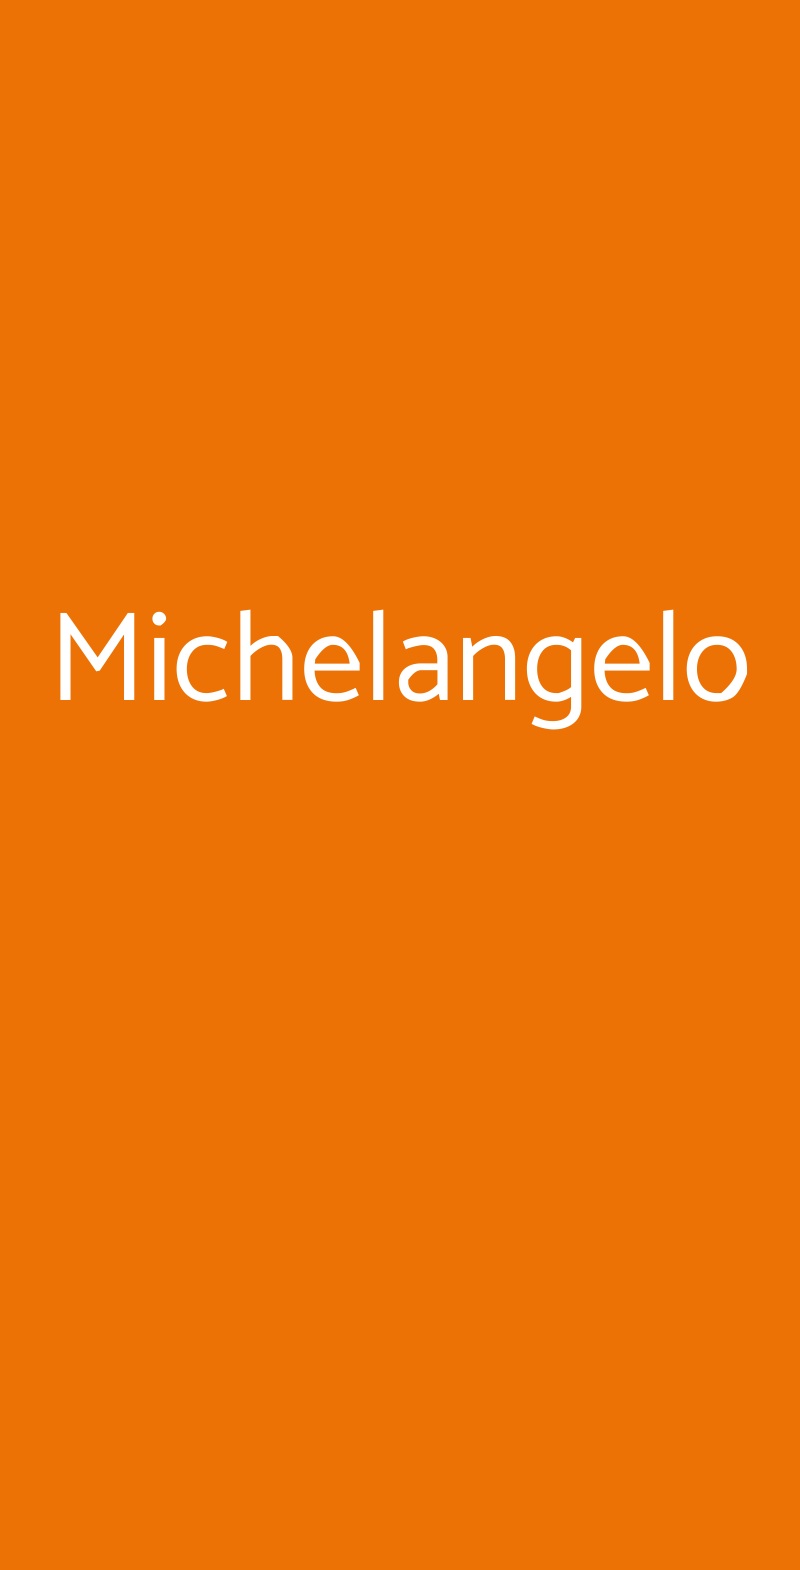 Michelangelo Milano menù 1 pagina